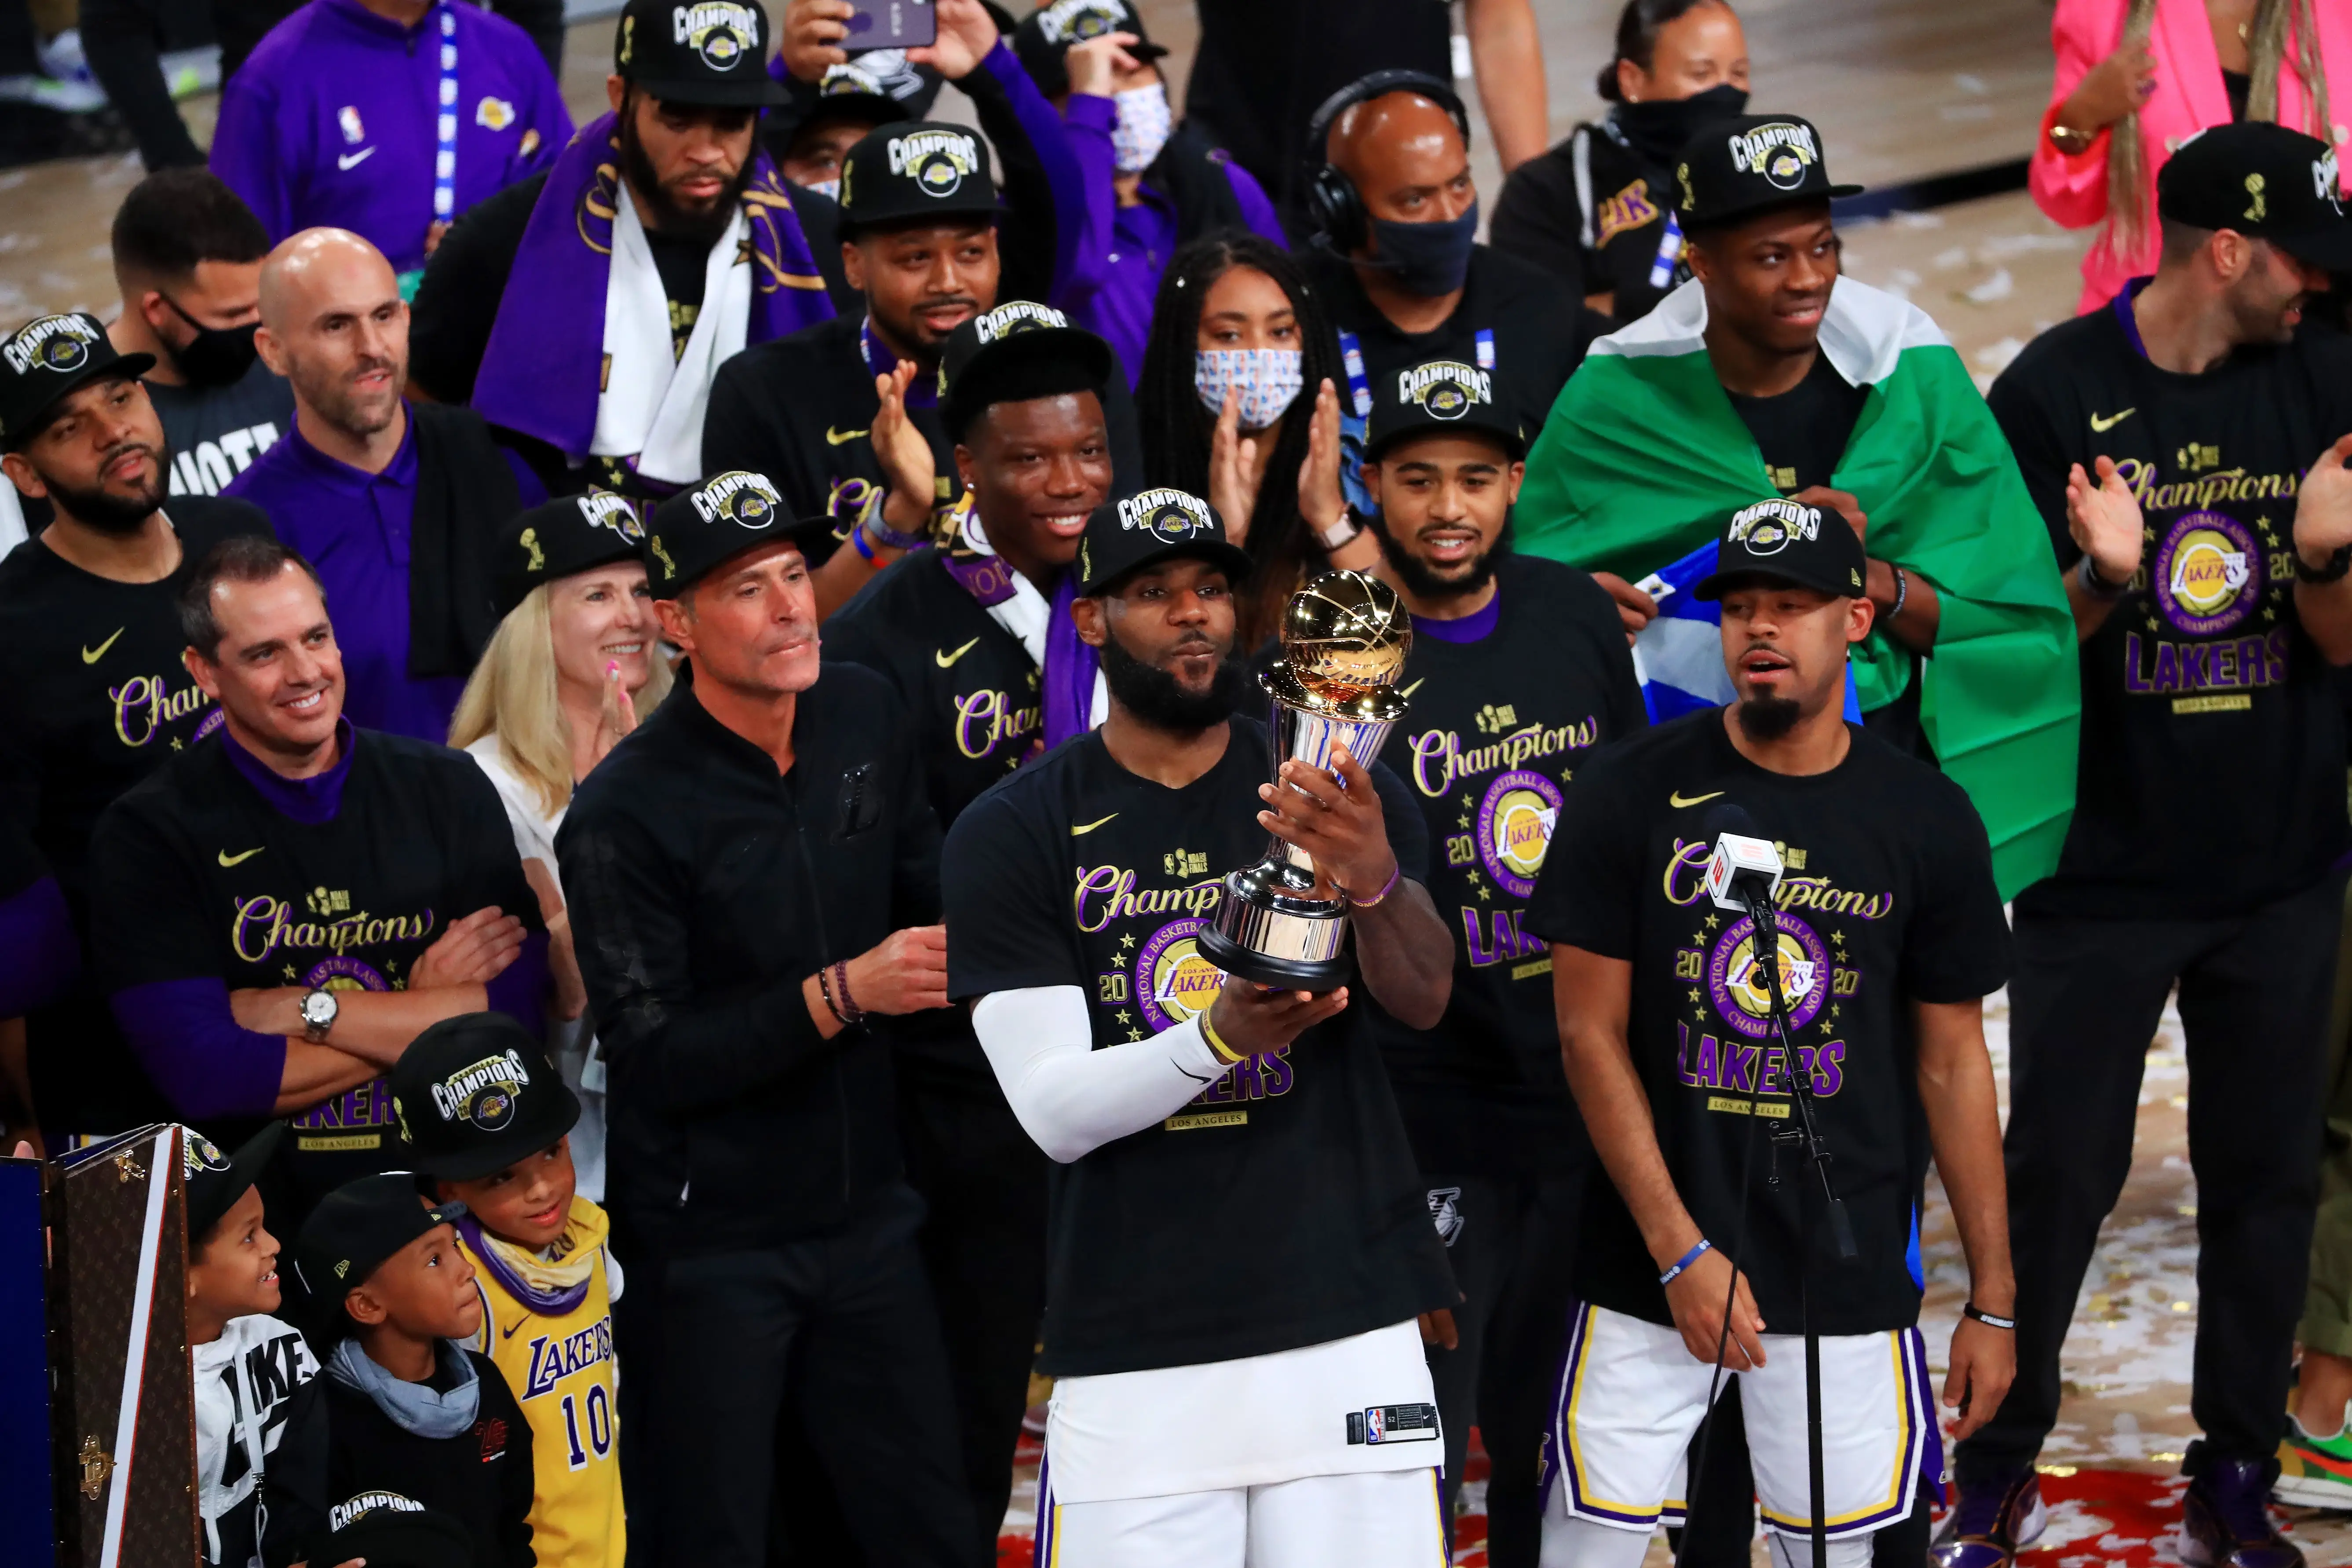 Imagem do Los Angeles Lakers campeão da temporada 2019/20